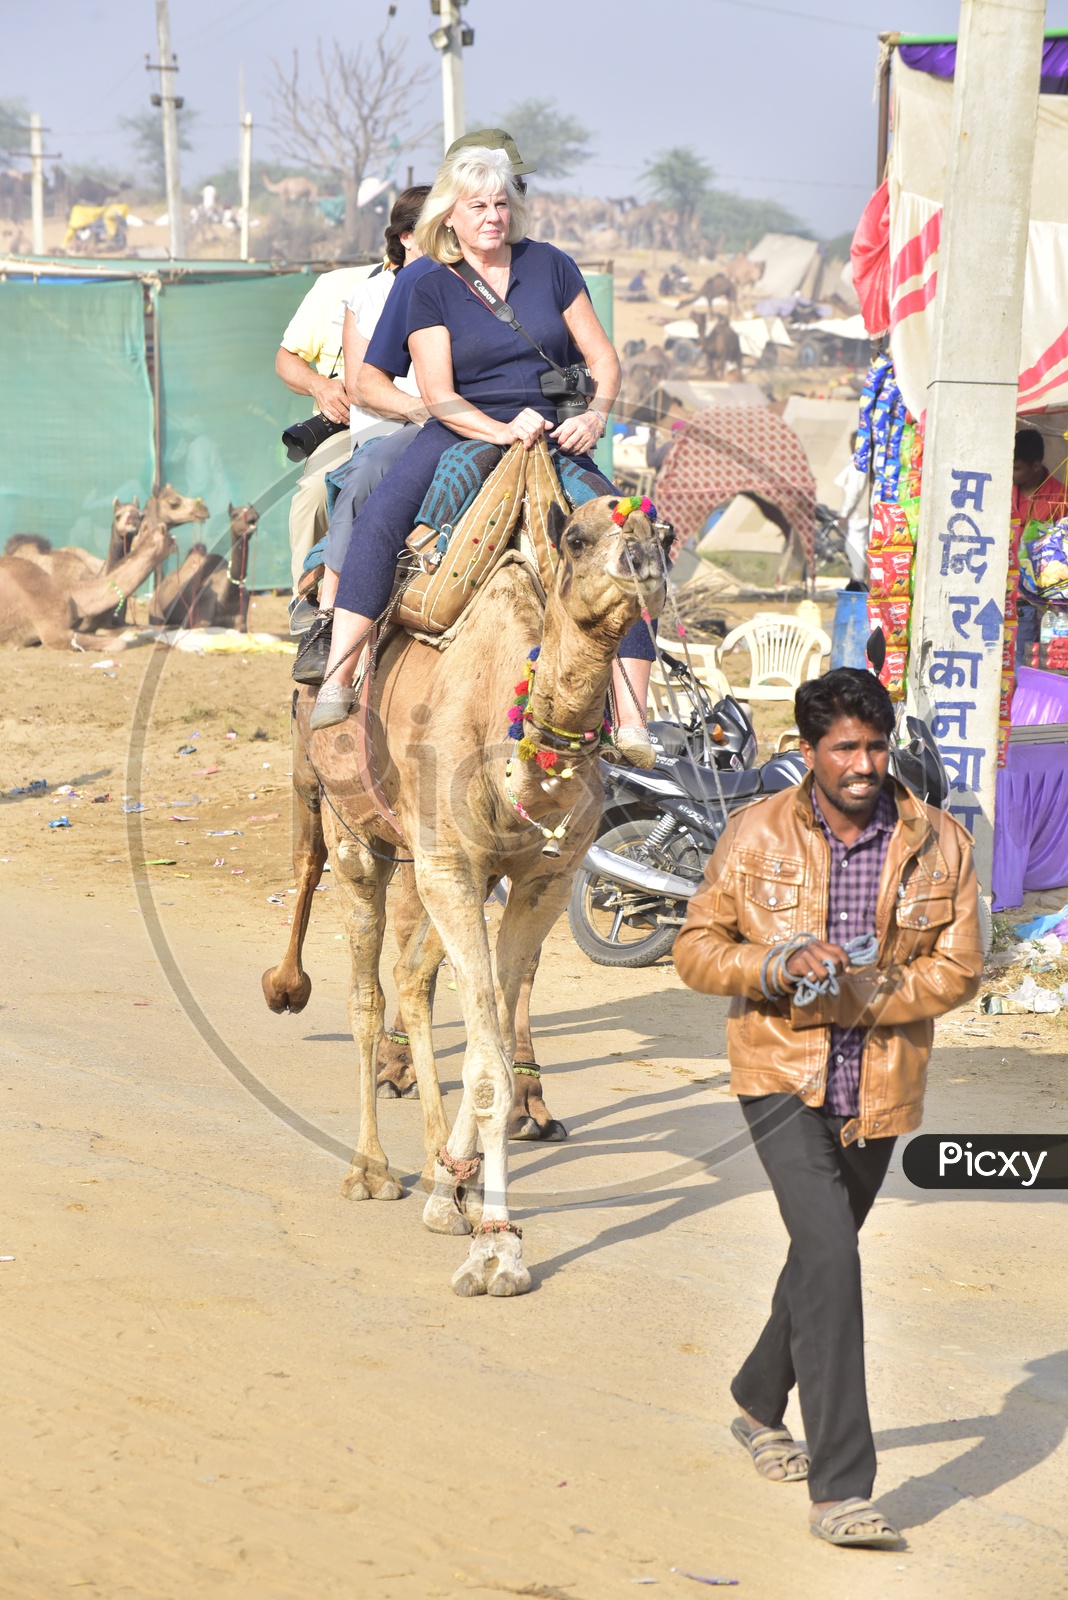 Foreigner enjoying the Camel ride at Pushkar Camel Fair, 2018